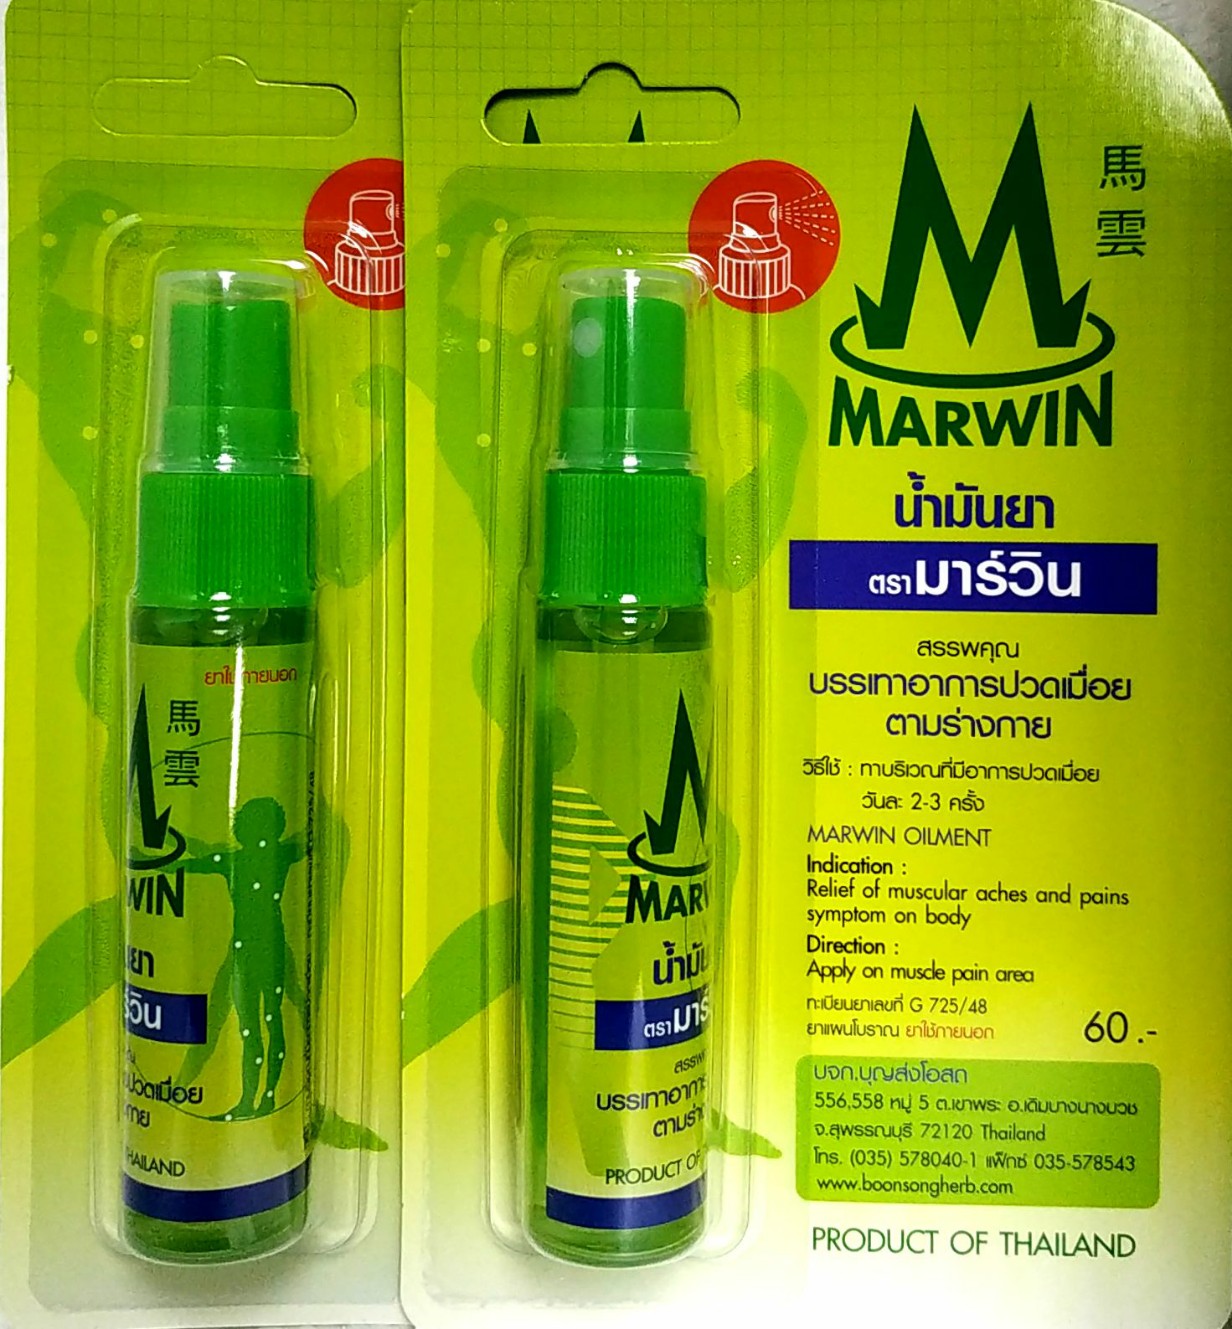 (สเปรย์จำนวน 2 ขวด) น้ำมัน มาร์วิน ชนิดสเปรย์ Marwin Oilment Spray 20 g